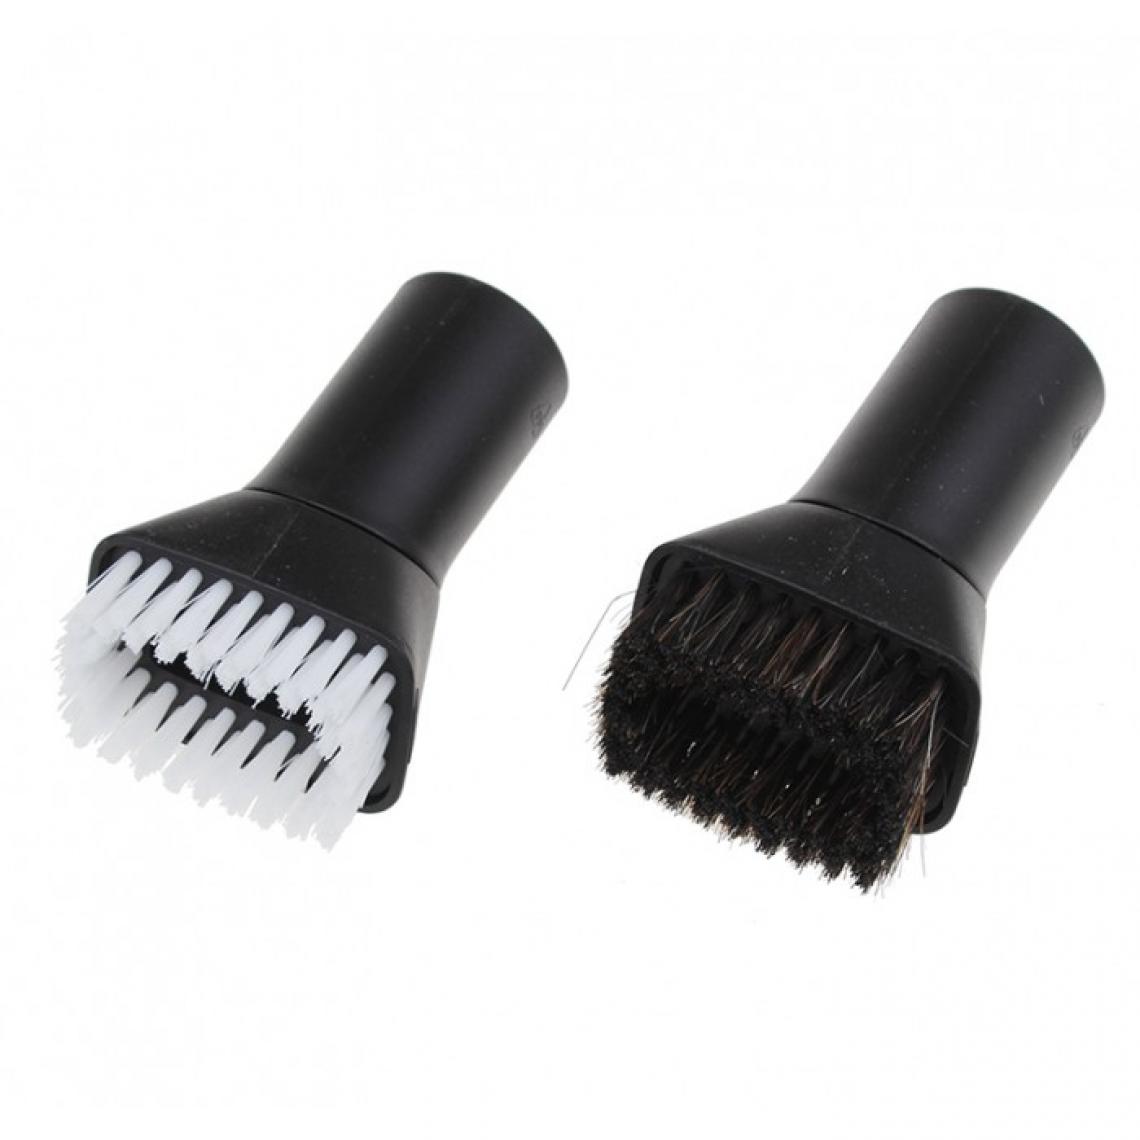 Karcher - Kit de brosses poils durs et doux pour aspirateur karcher - Accessoire entretien des sols